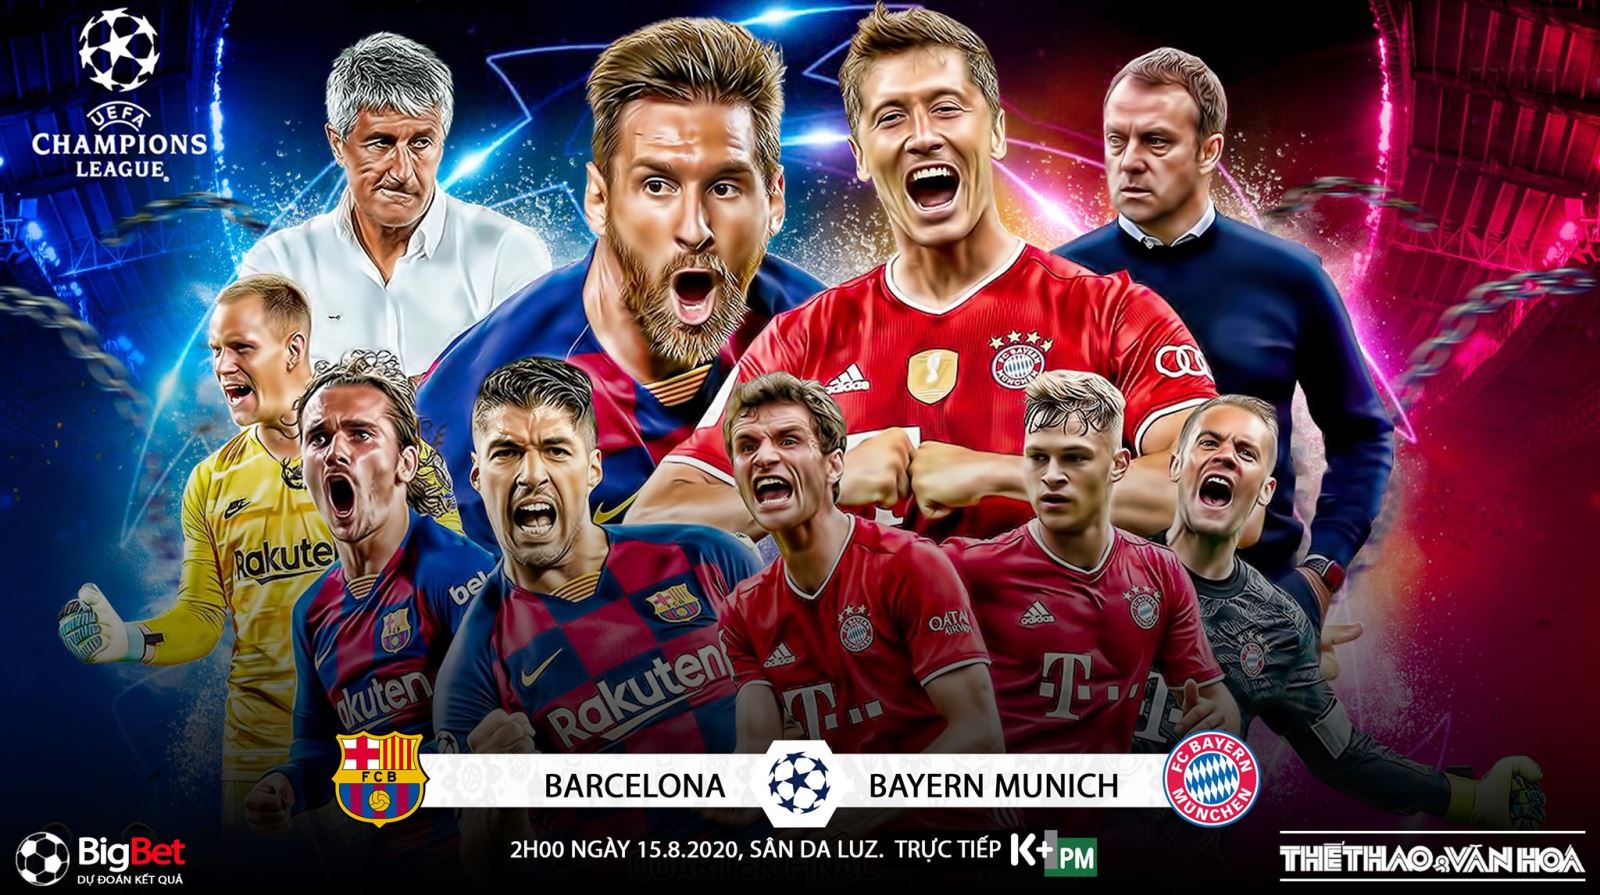 Nhận định bóng đá nhà cái Barcelona vs Bayern Munich. Tứ kết Cúp C1 châu Âu. Trực tiếp K+PM 